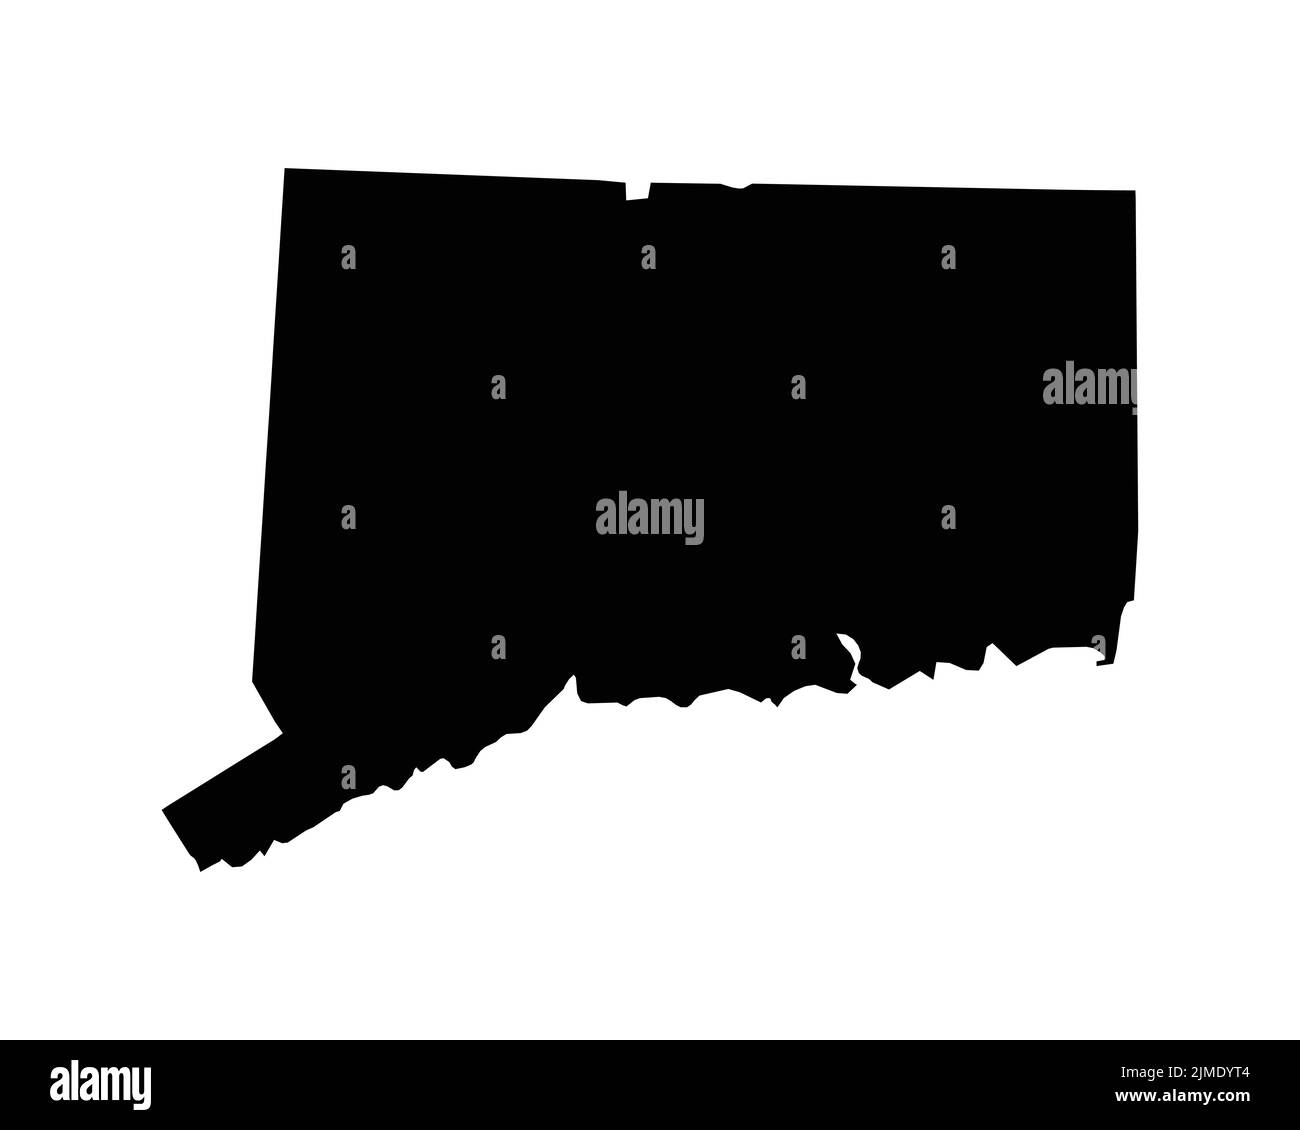 US-Karte von Connecticut. CT USA State Map. Schwarz-Weiß Connecticutian State Border Grenzlinie Umriss Geographie Territory Form Vektor Illustration Stock Vektor